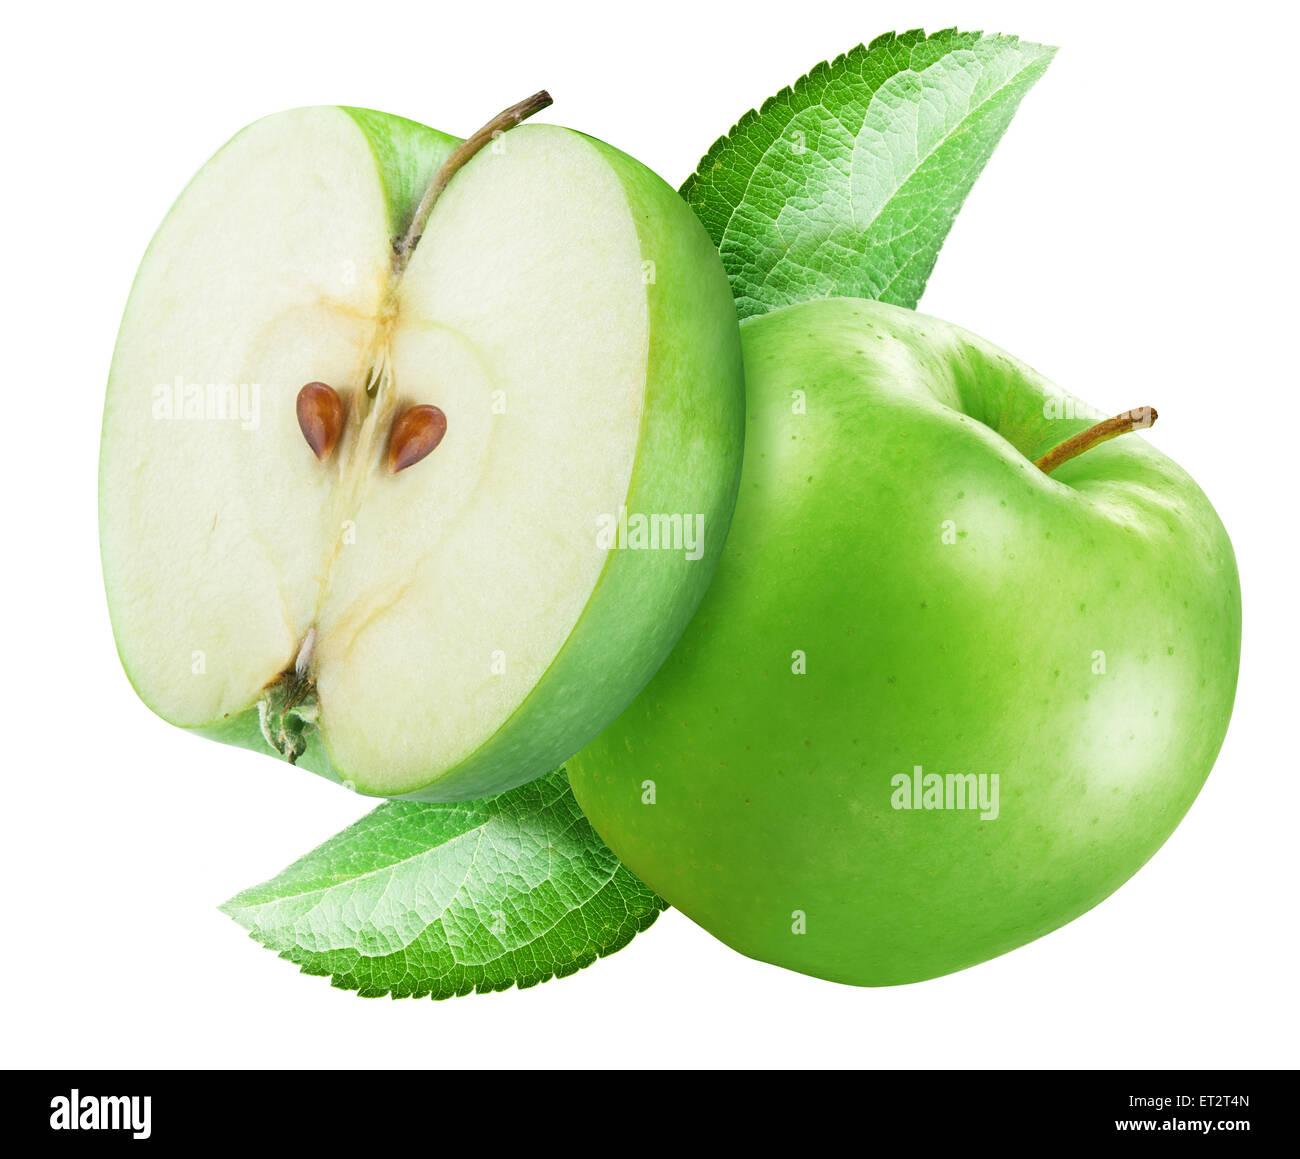 Grüner Apfel und eine Hälfte von Apple. Datei enthält Beschneidungspfade. Stockfoto